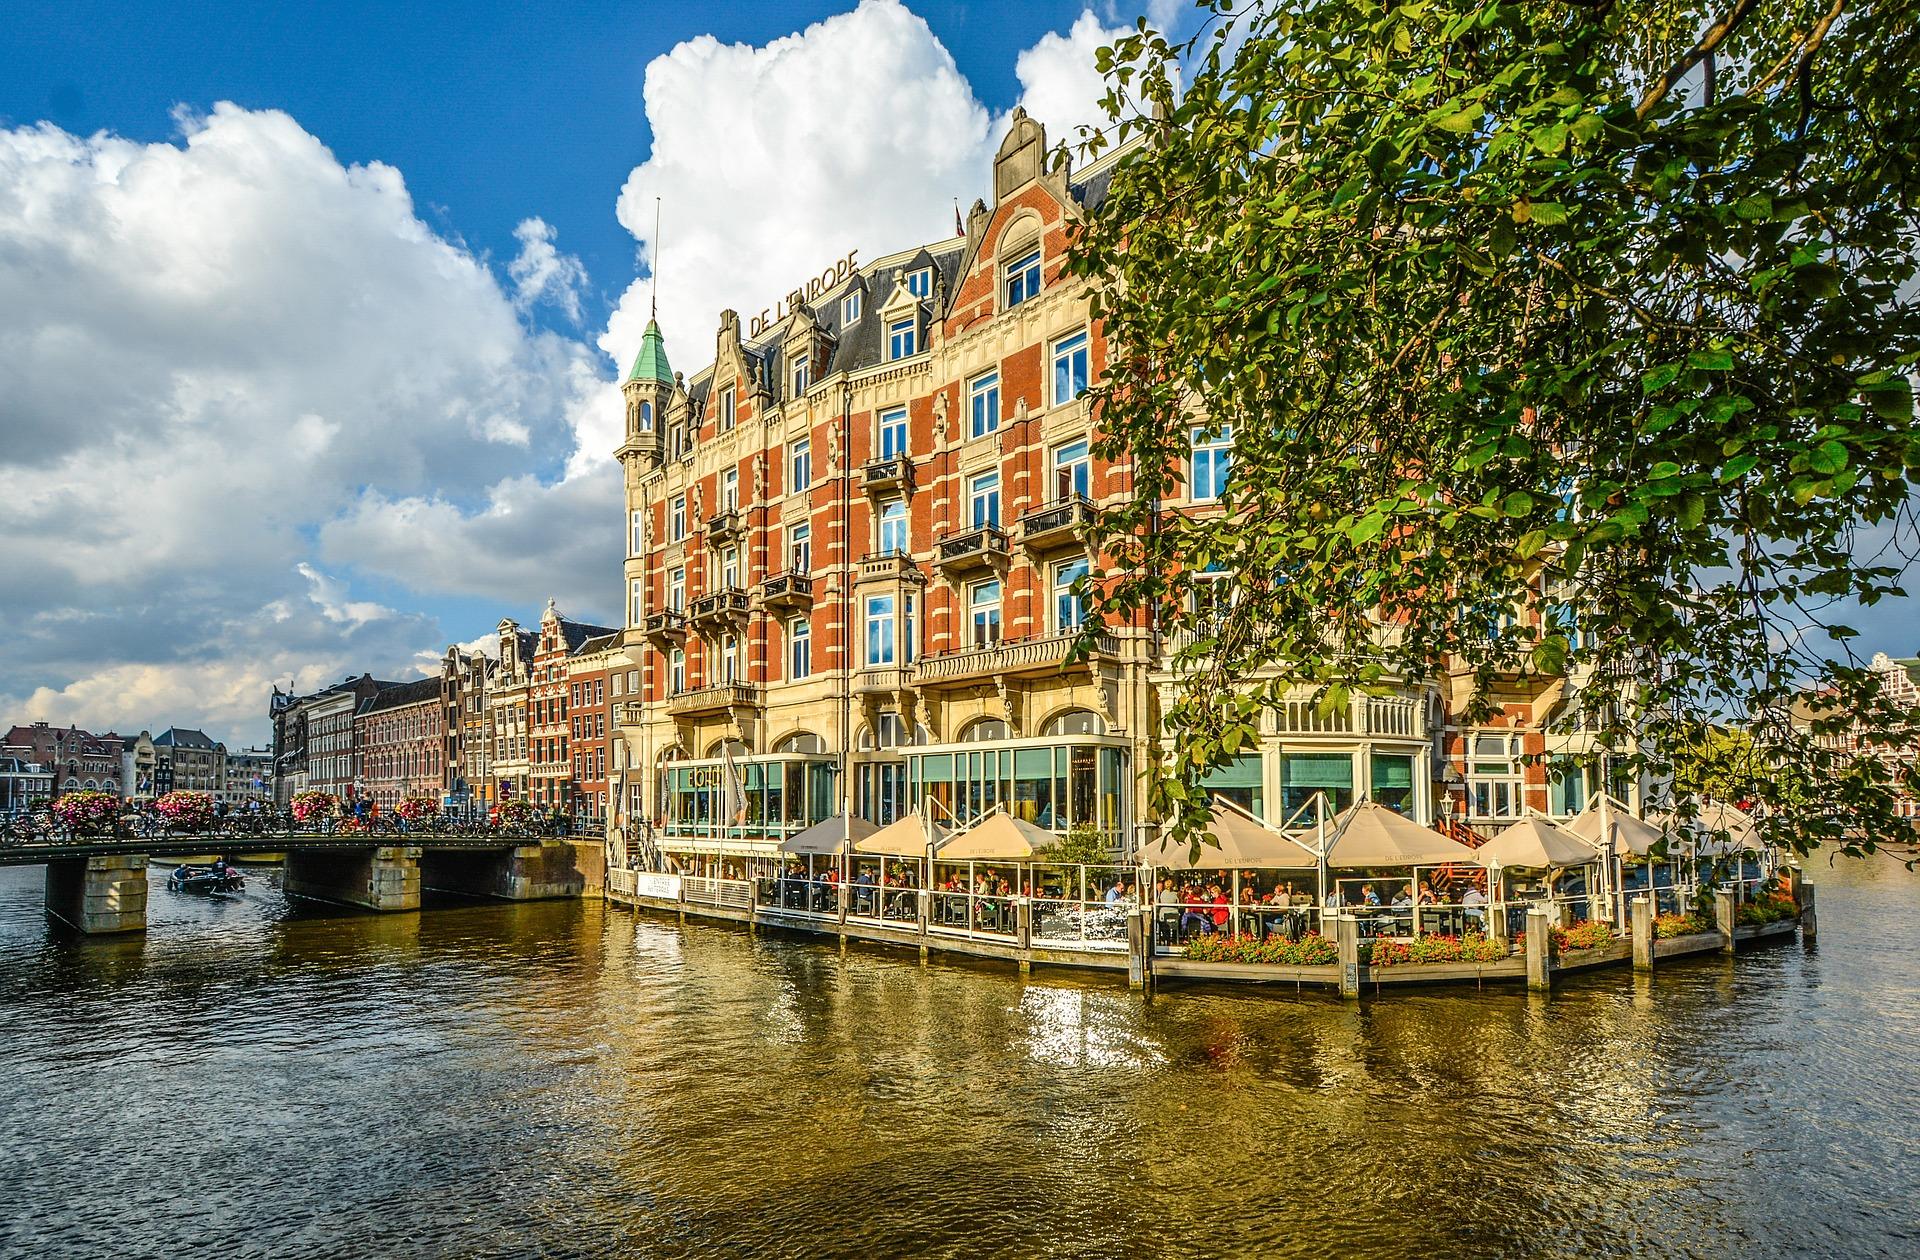 Meenemen overspringen Formulering Dit zijn de mooiste hotels van Nederland | DIK.NL